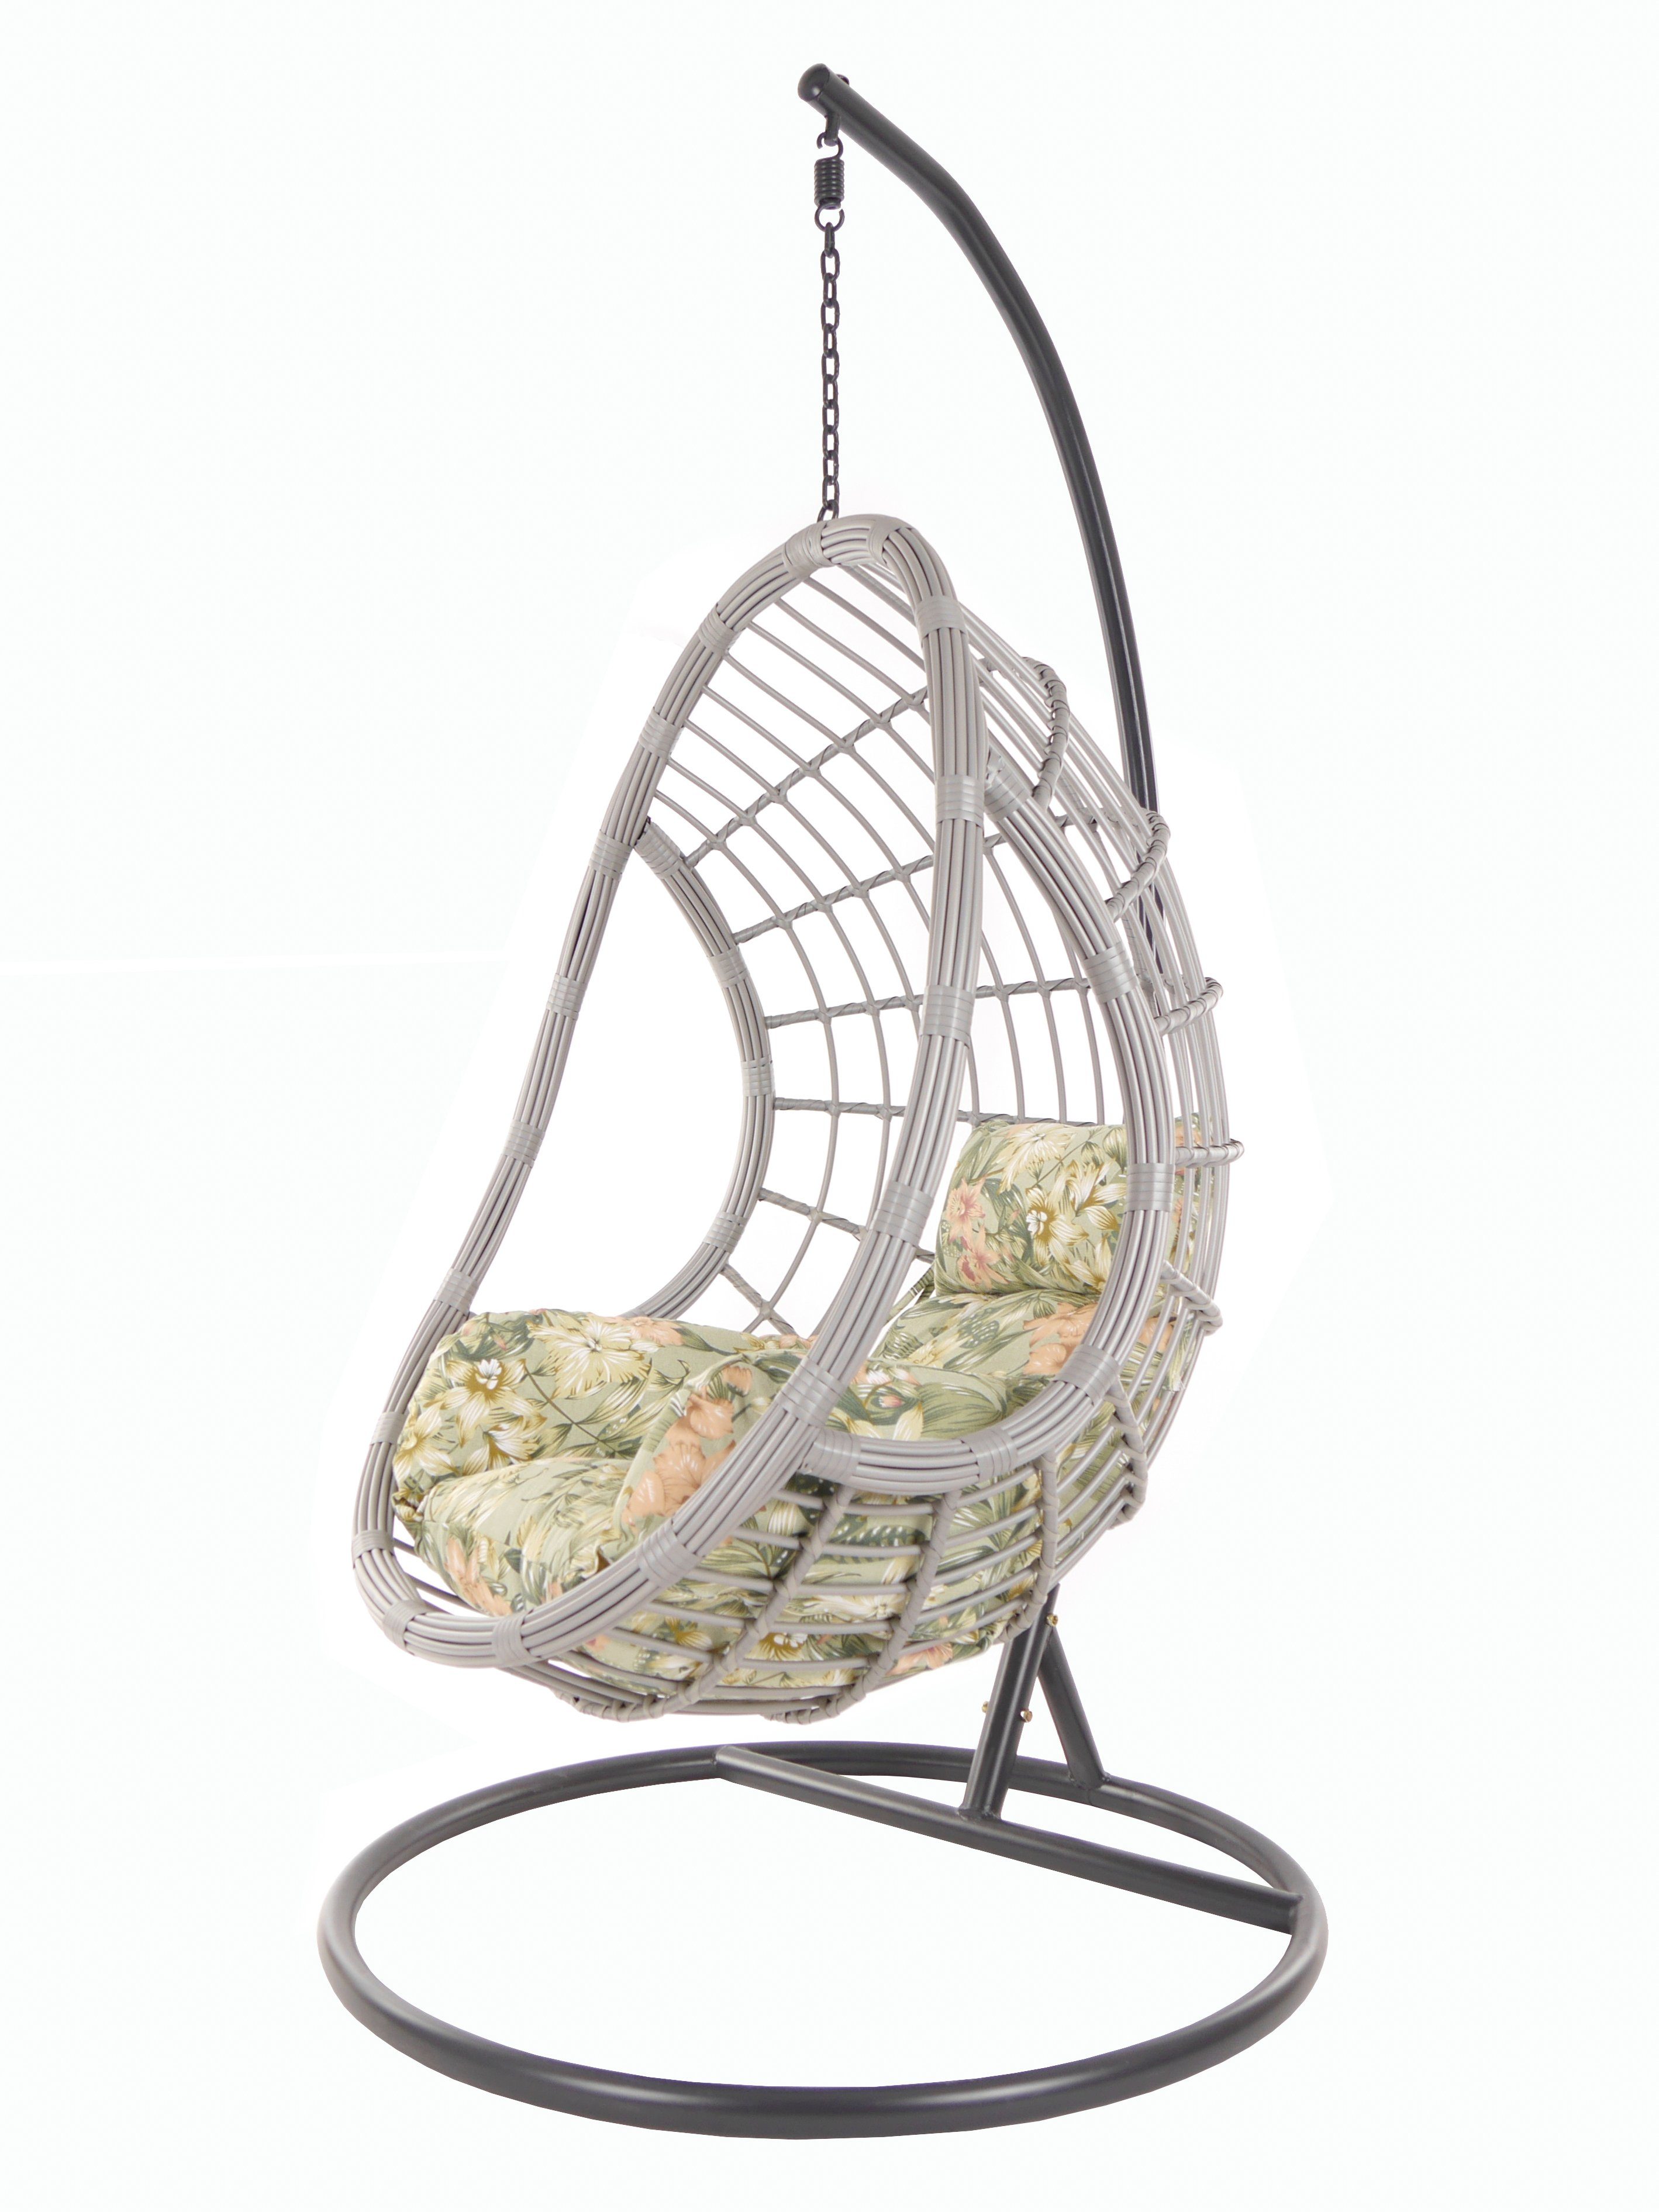 KIDEO Hängesessel PALMANOVA lightgrey, Swing Chair, Loungemöbel, Hängesessel mit Gestell und Kissen blumenmuster (5101 tropical garden)